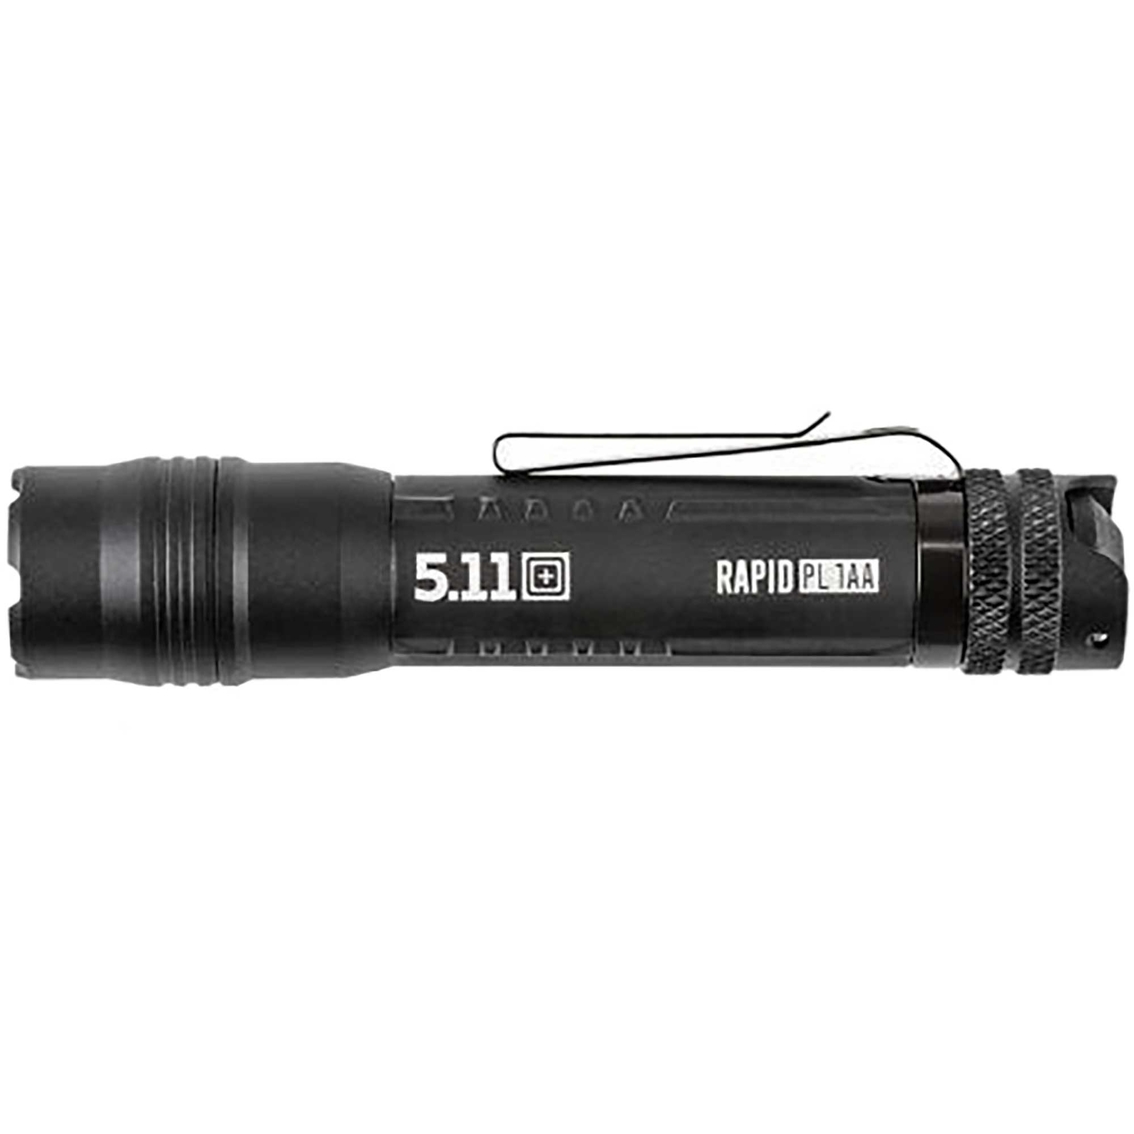 5.11 Rapid PL 1AA Flashlight - Image 7 of 8